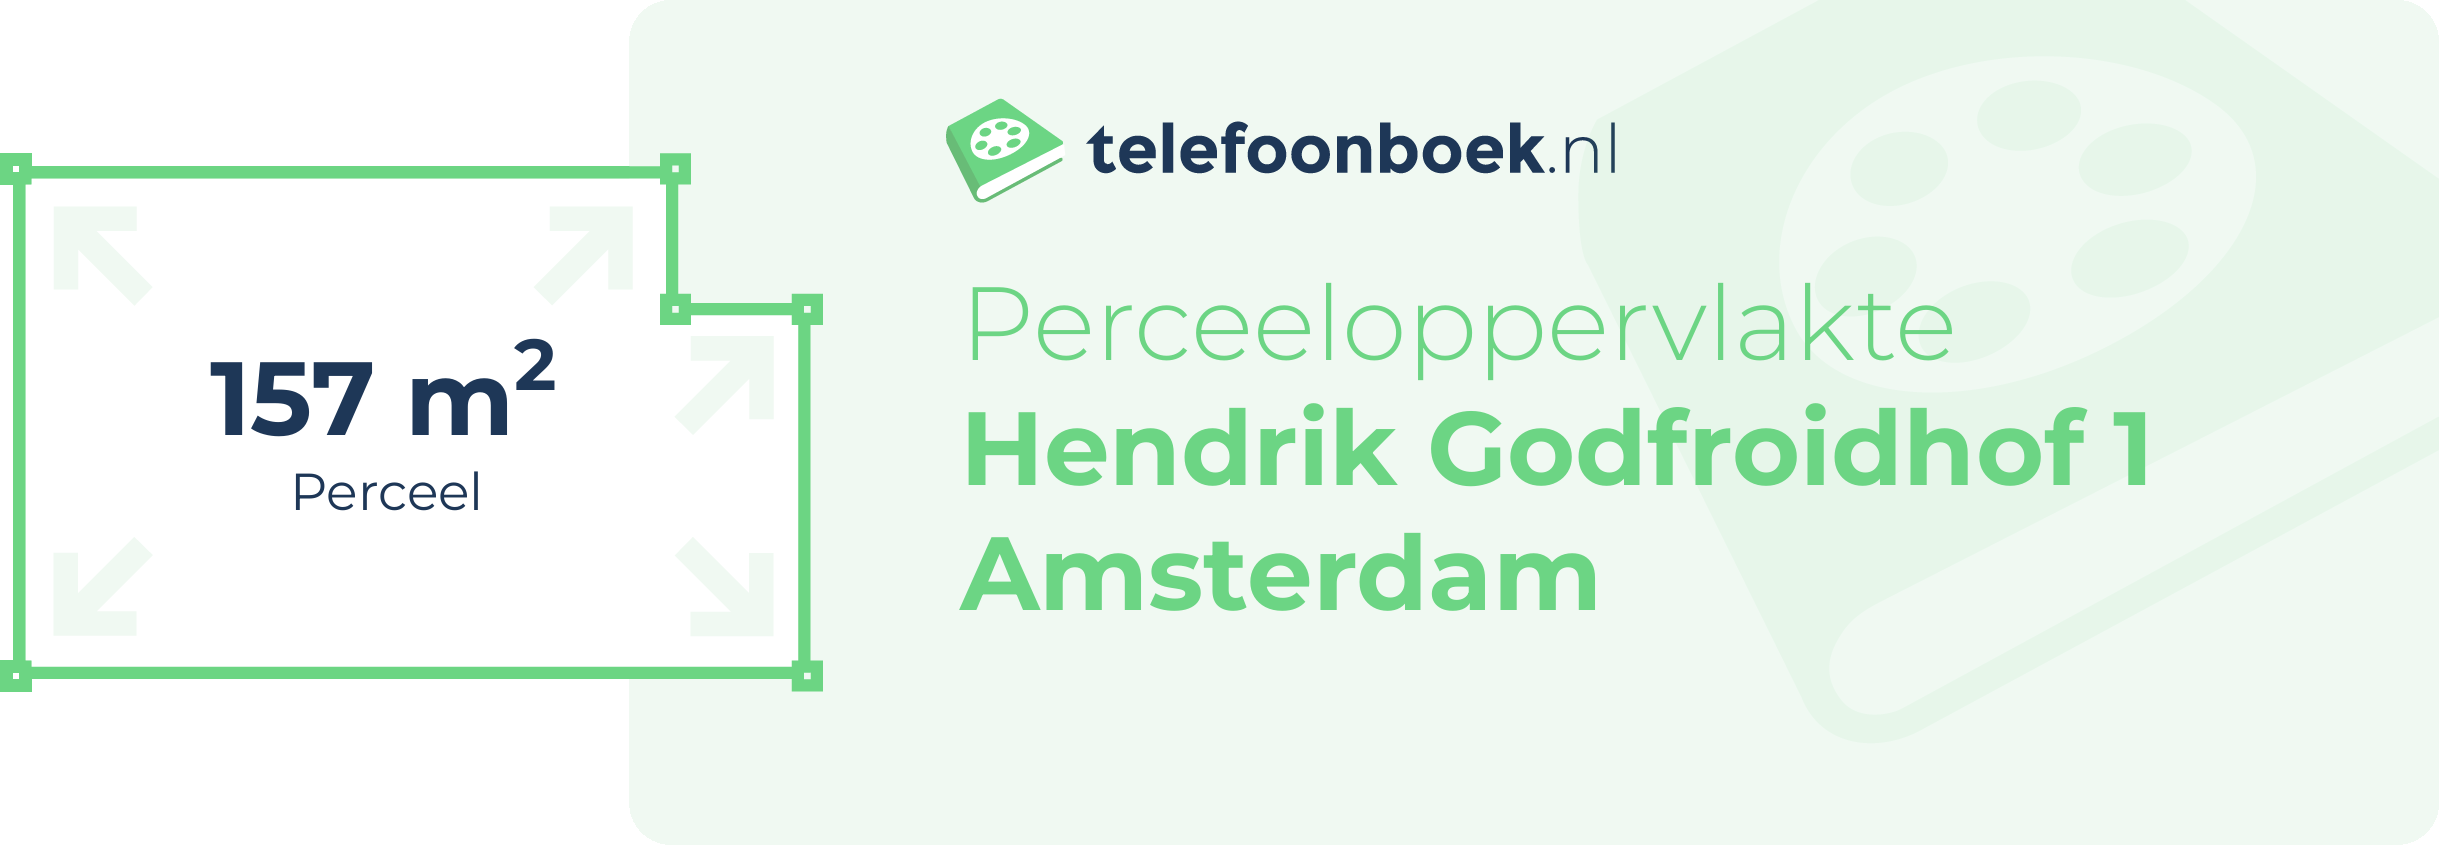 Perceeloppervlakte Hendrik Godfroidhof 1 Amsterdam